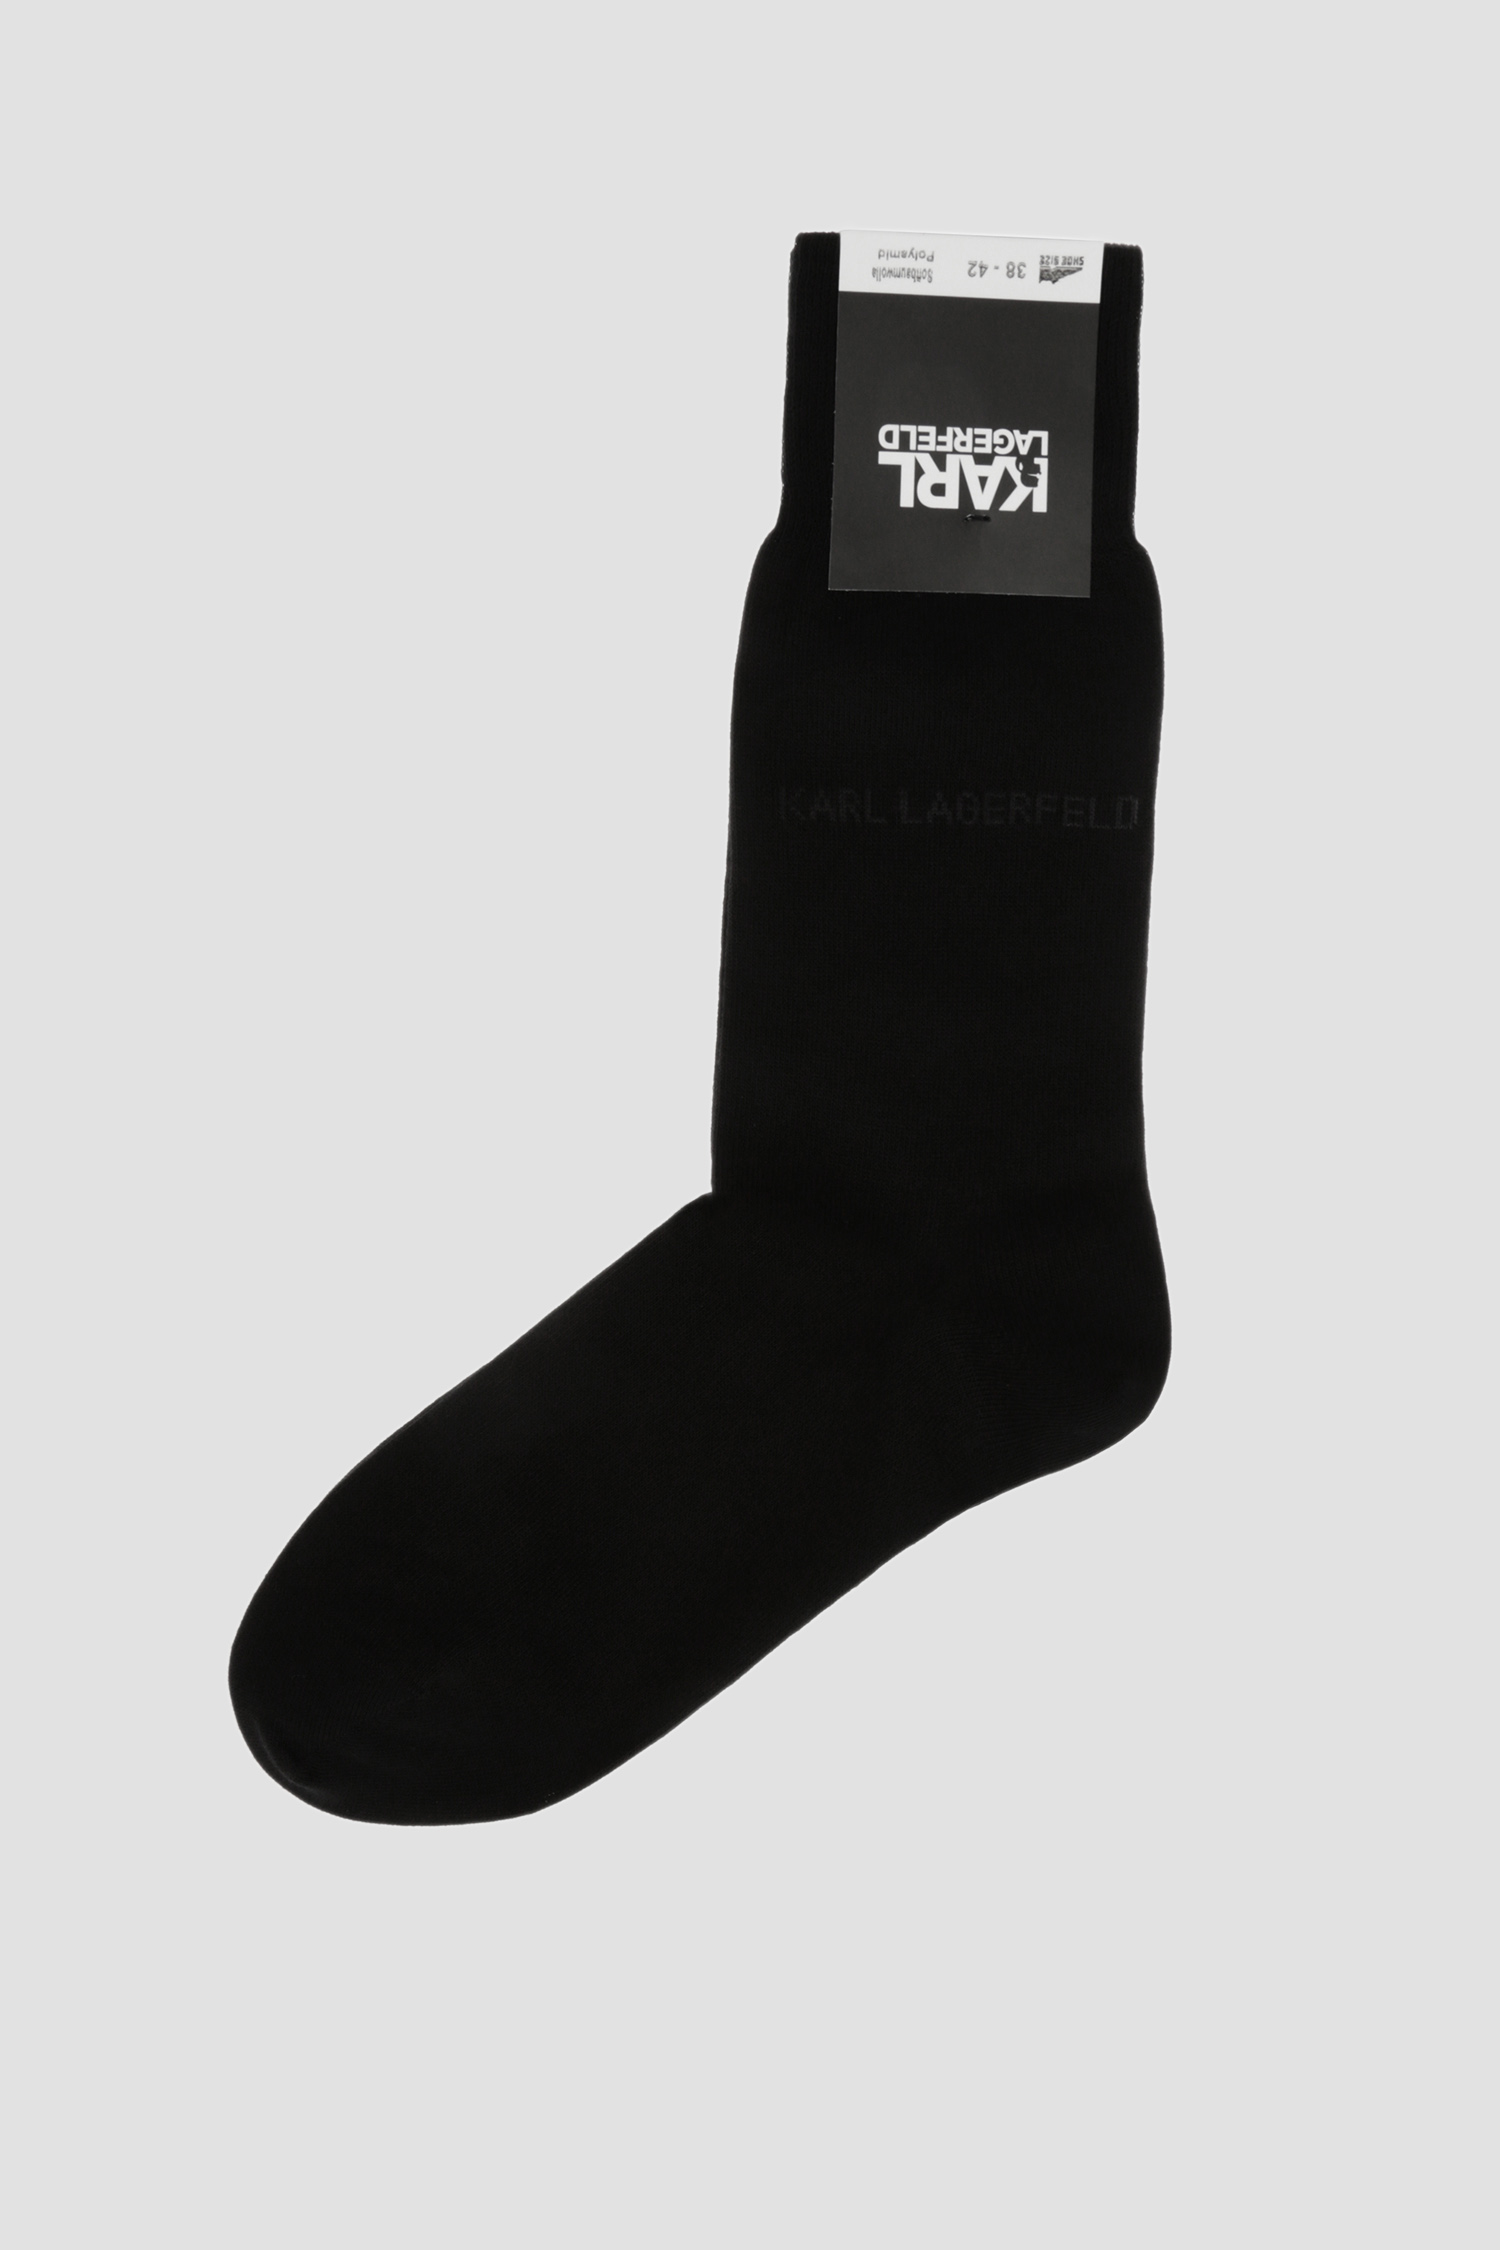 Чоловічі чорні шкарпетки Karl Lagerfeld 592101.805501;990